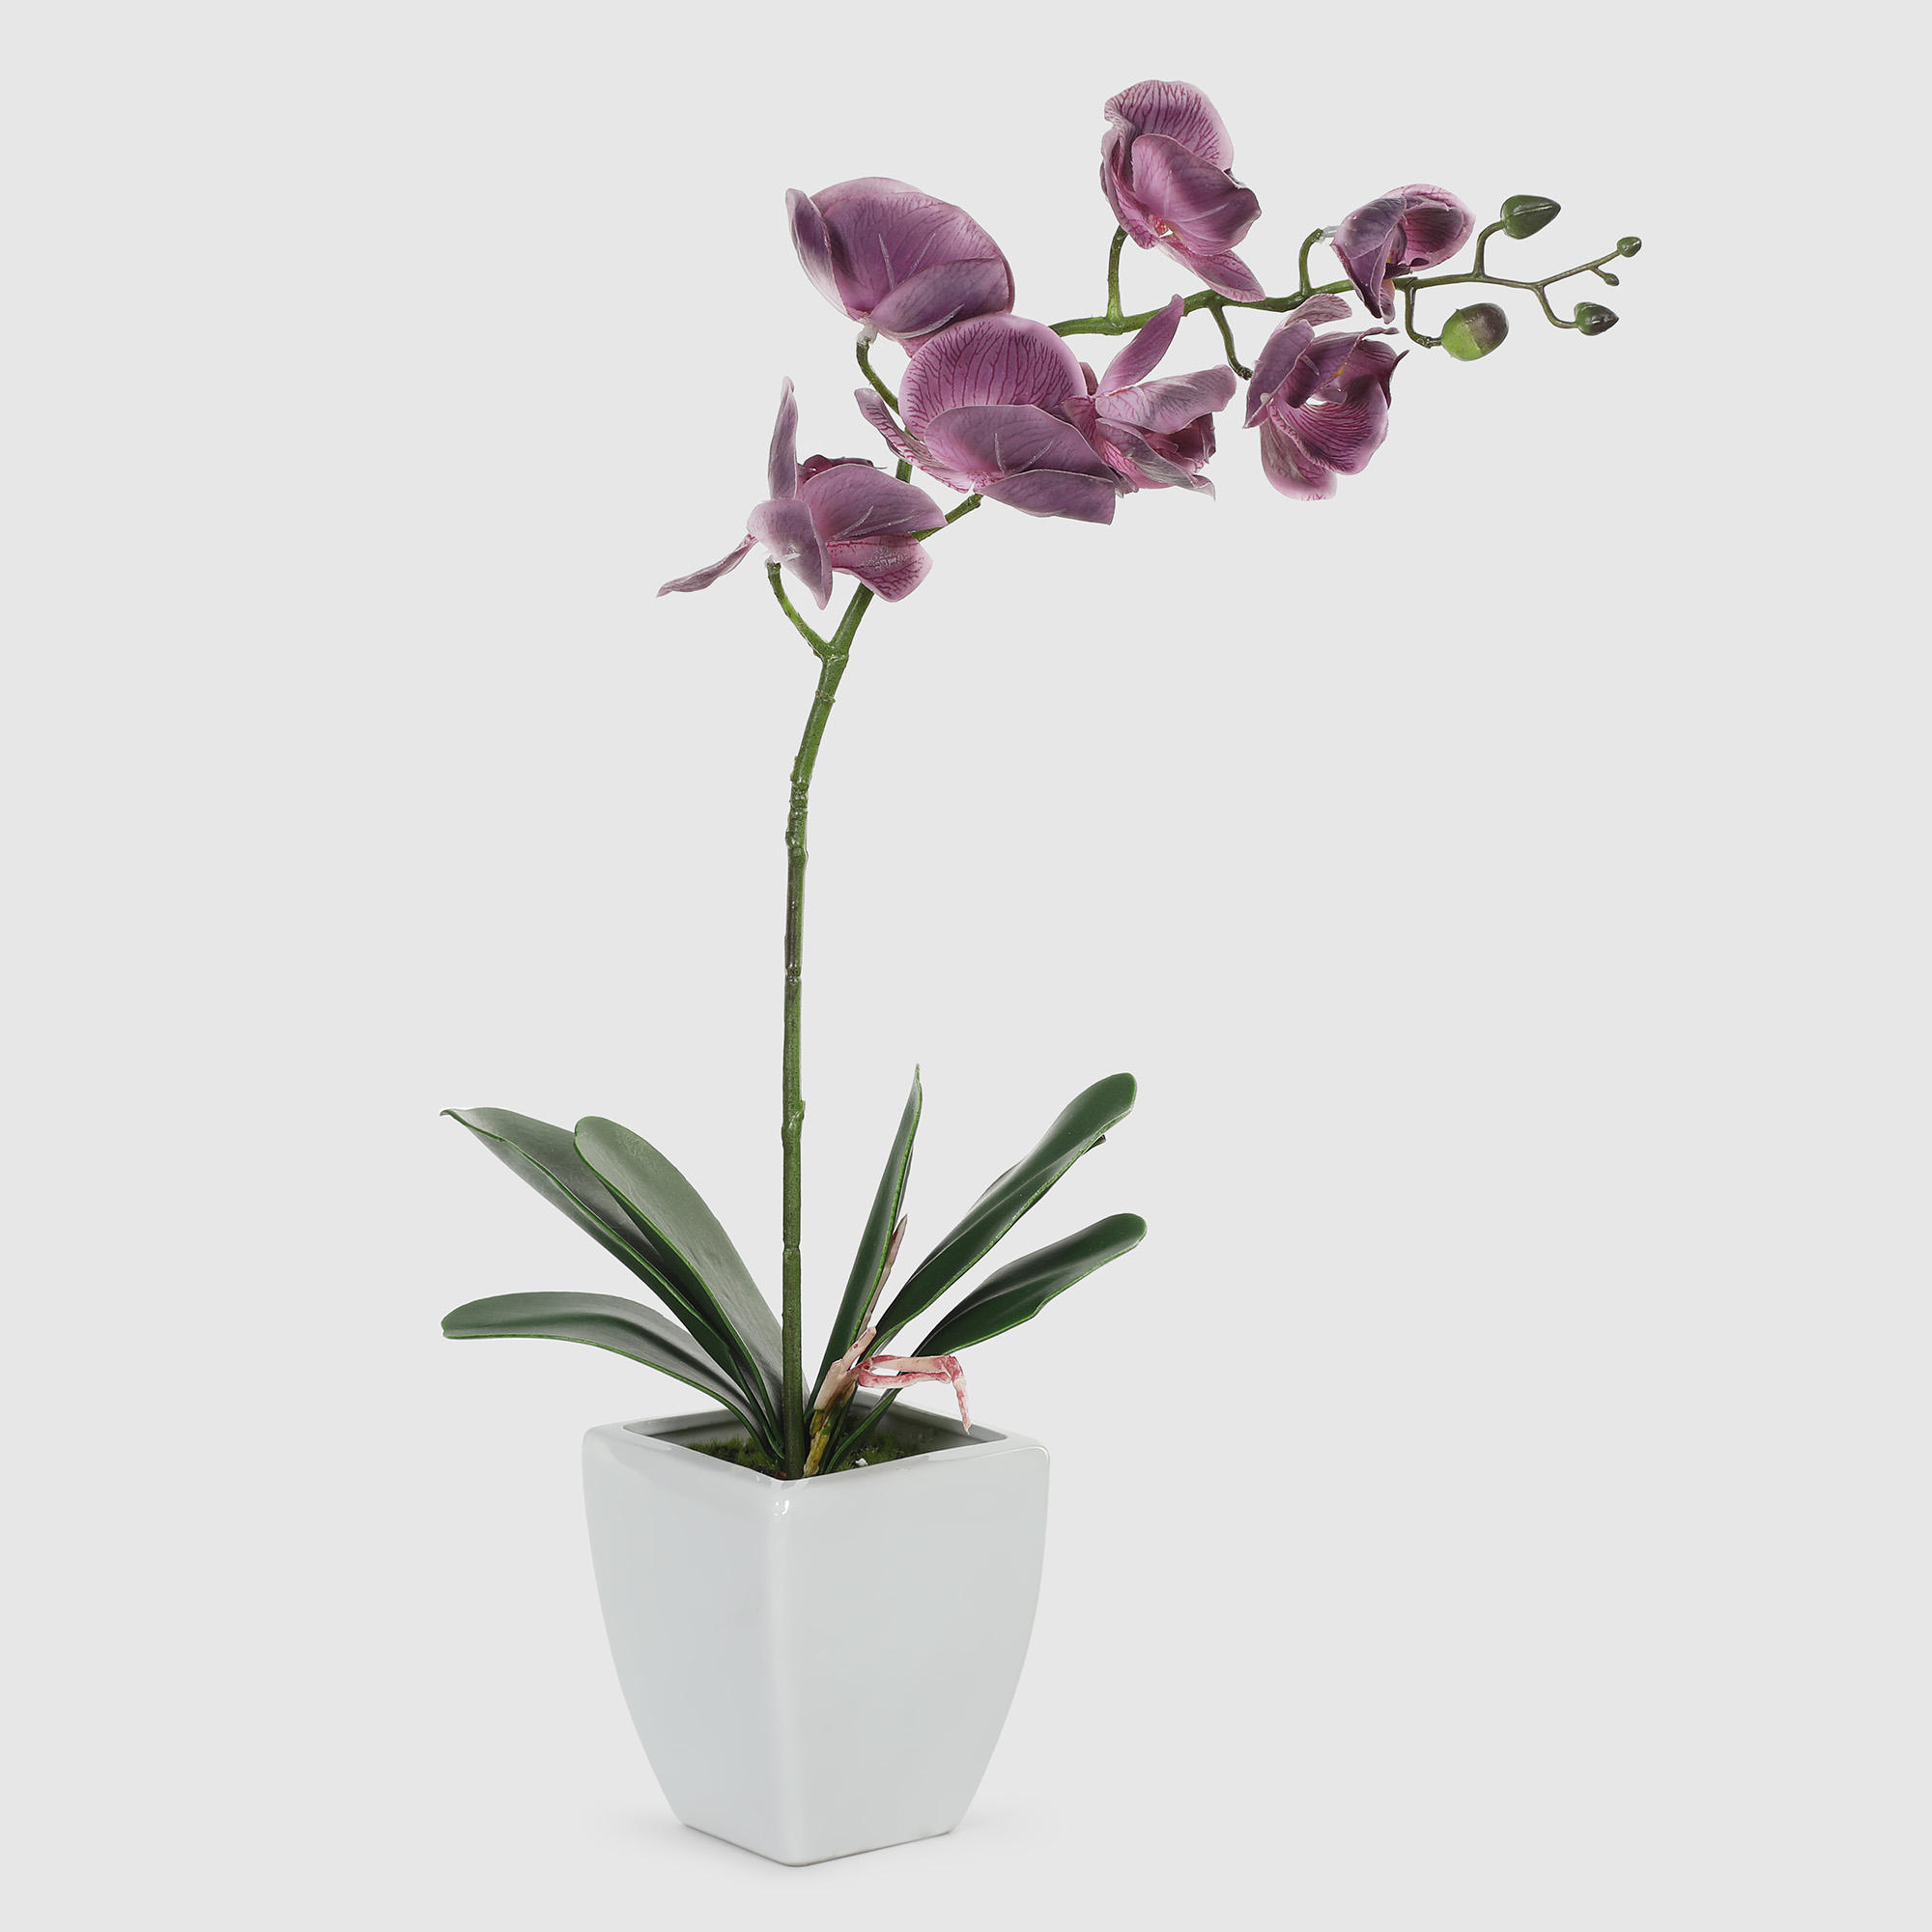 Орхидея в белом кашпо Конэко-О 57210159185 60 см орхидея фиолетовая конэко о высота 100 40 60 см